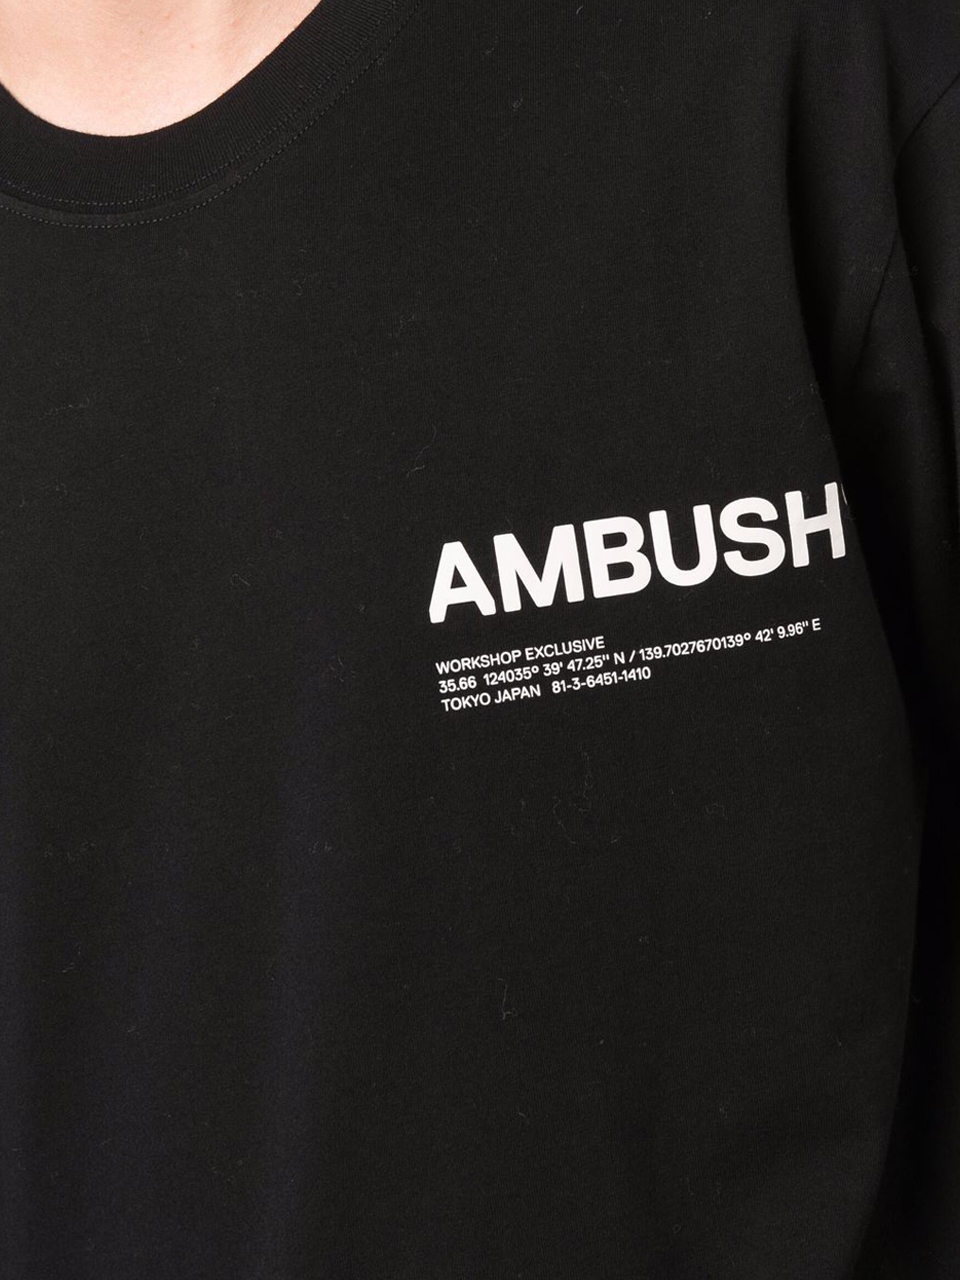 Imagem de: Camiseta AMBUSH Preta com Logo